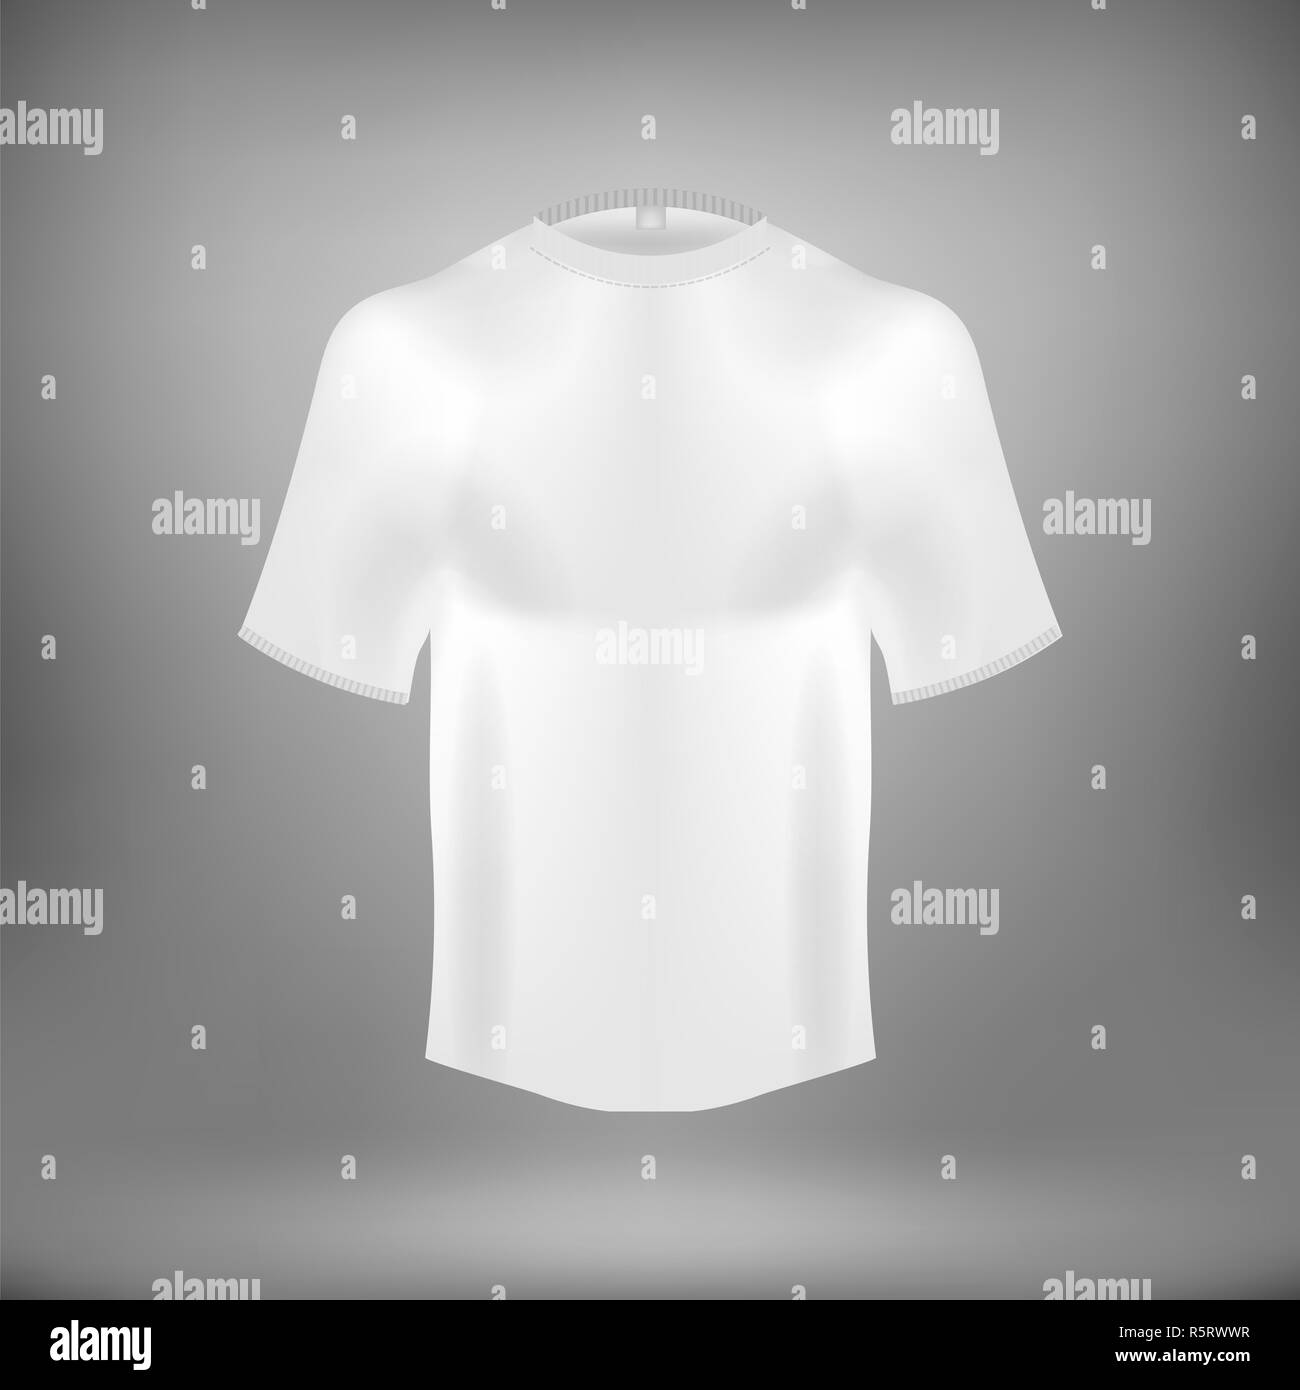 Blank White Cotton t shirt Stock Photo